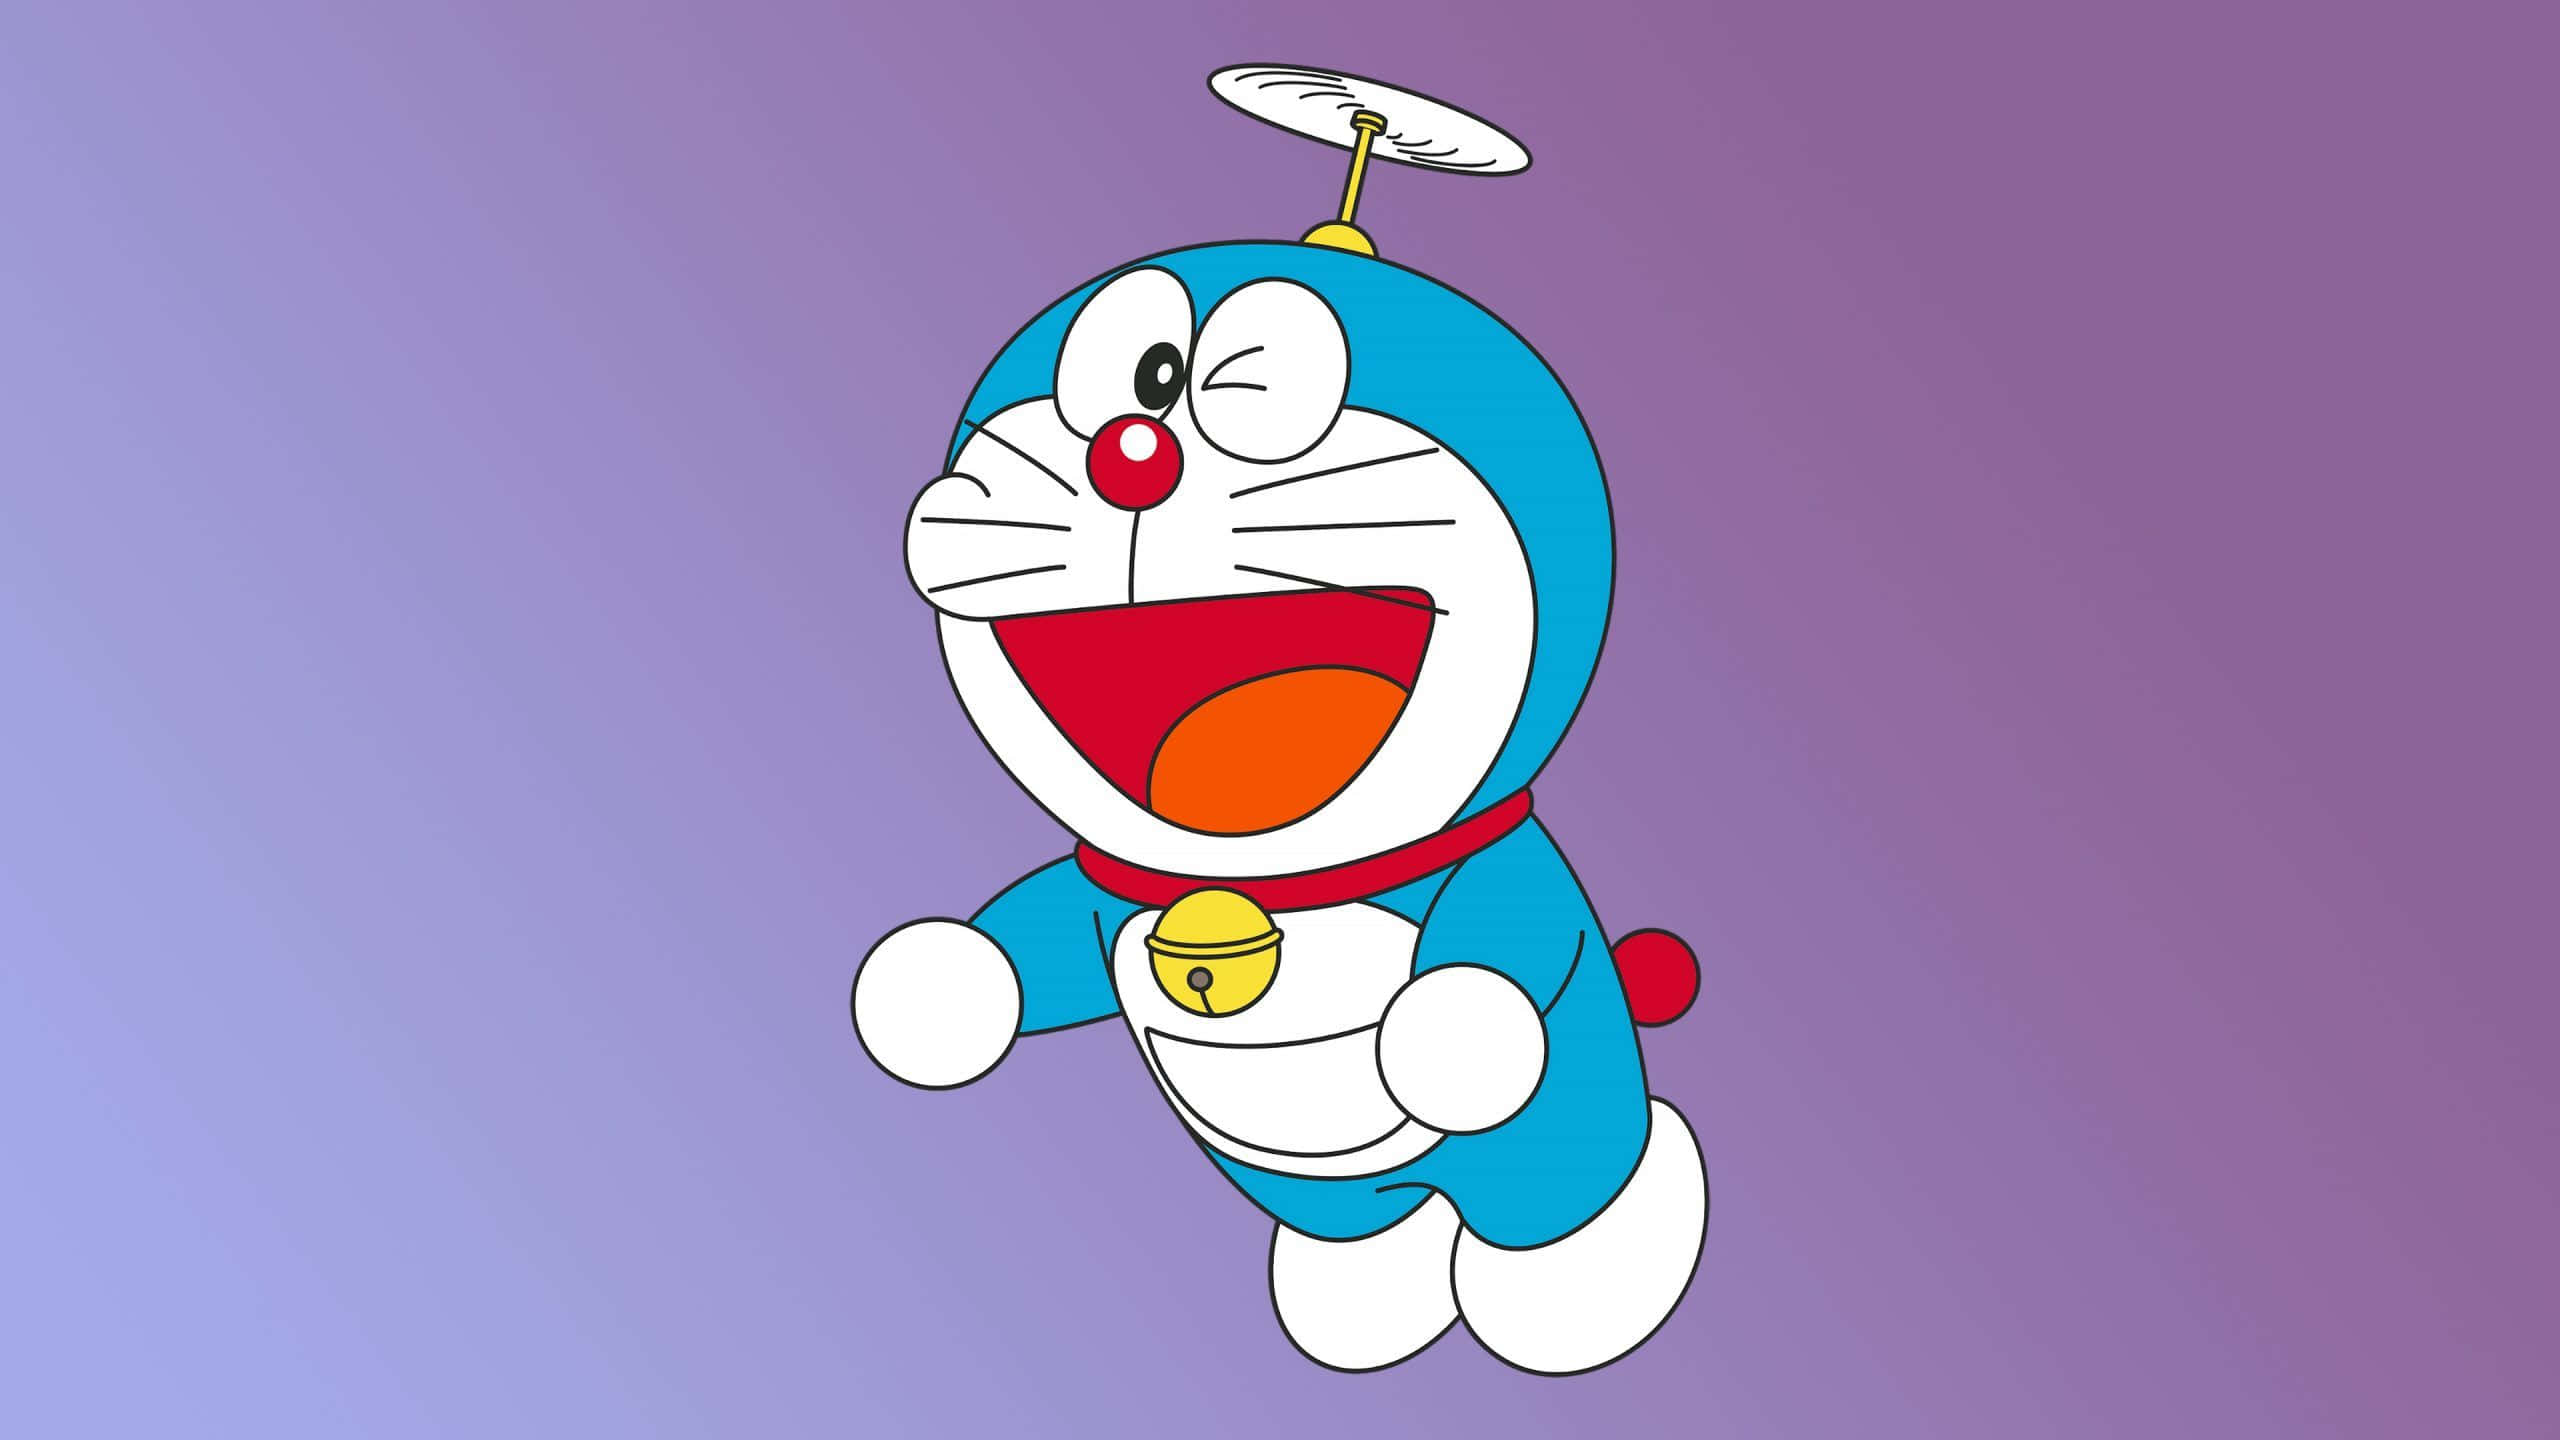 Doraemonog Hans Venner Nyder En Fredelig Dag.